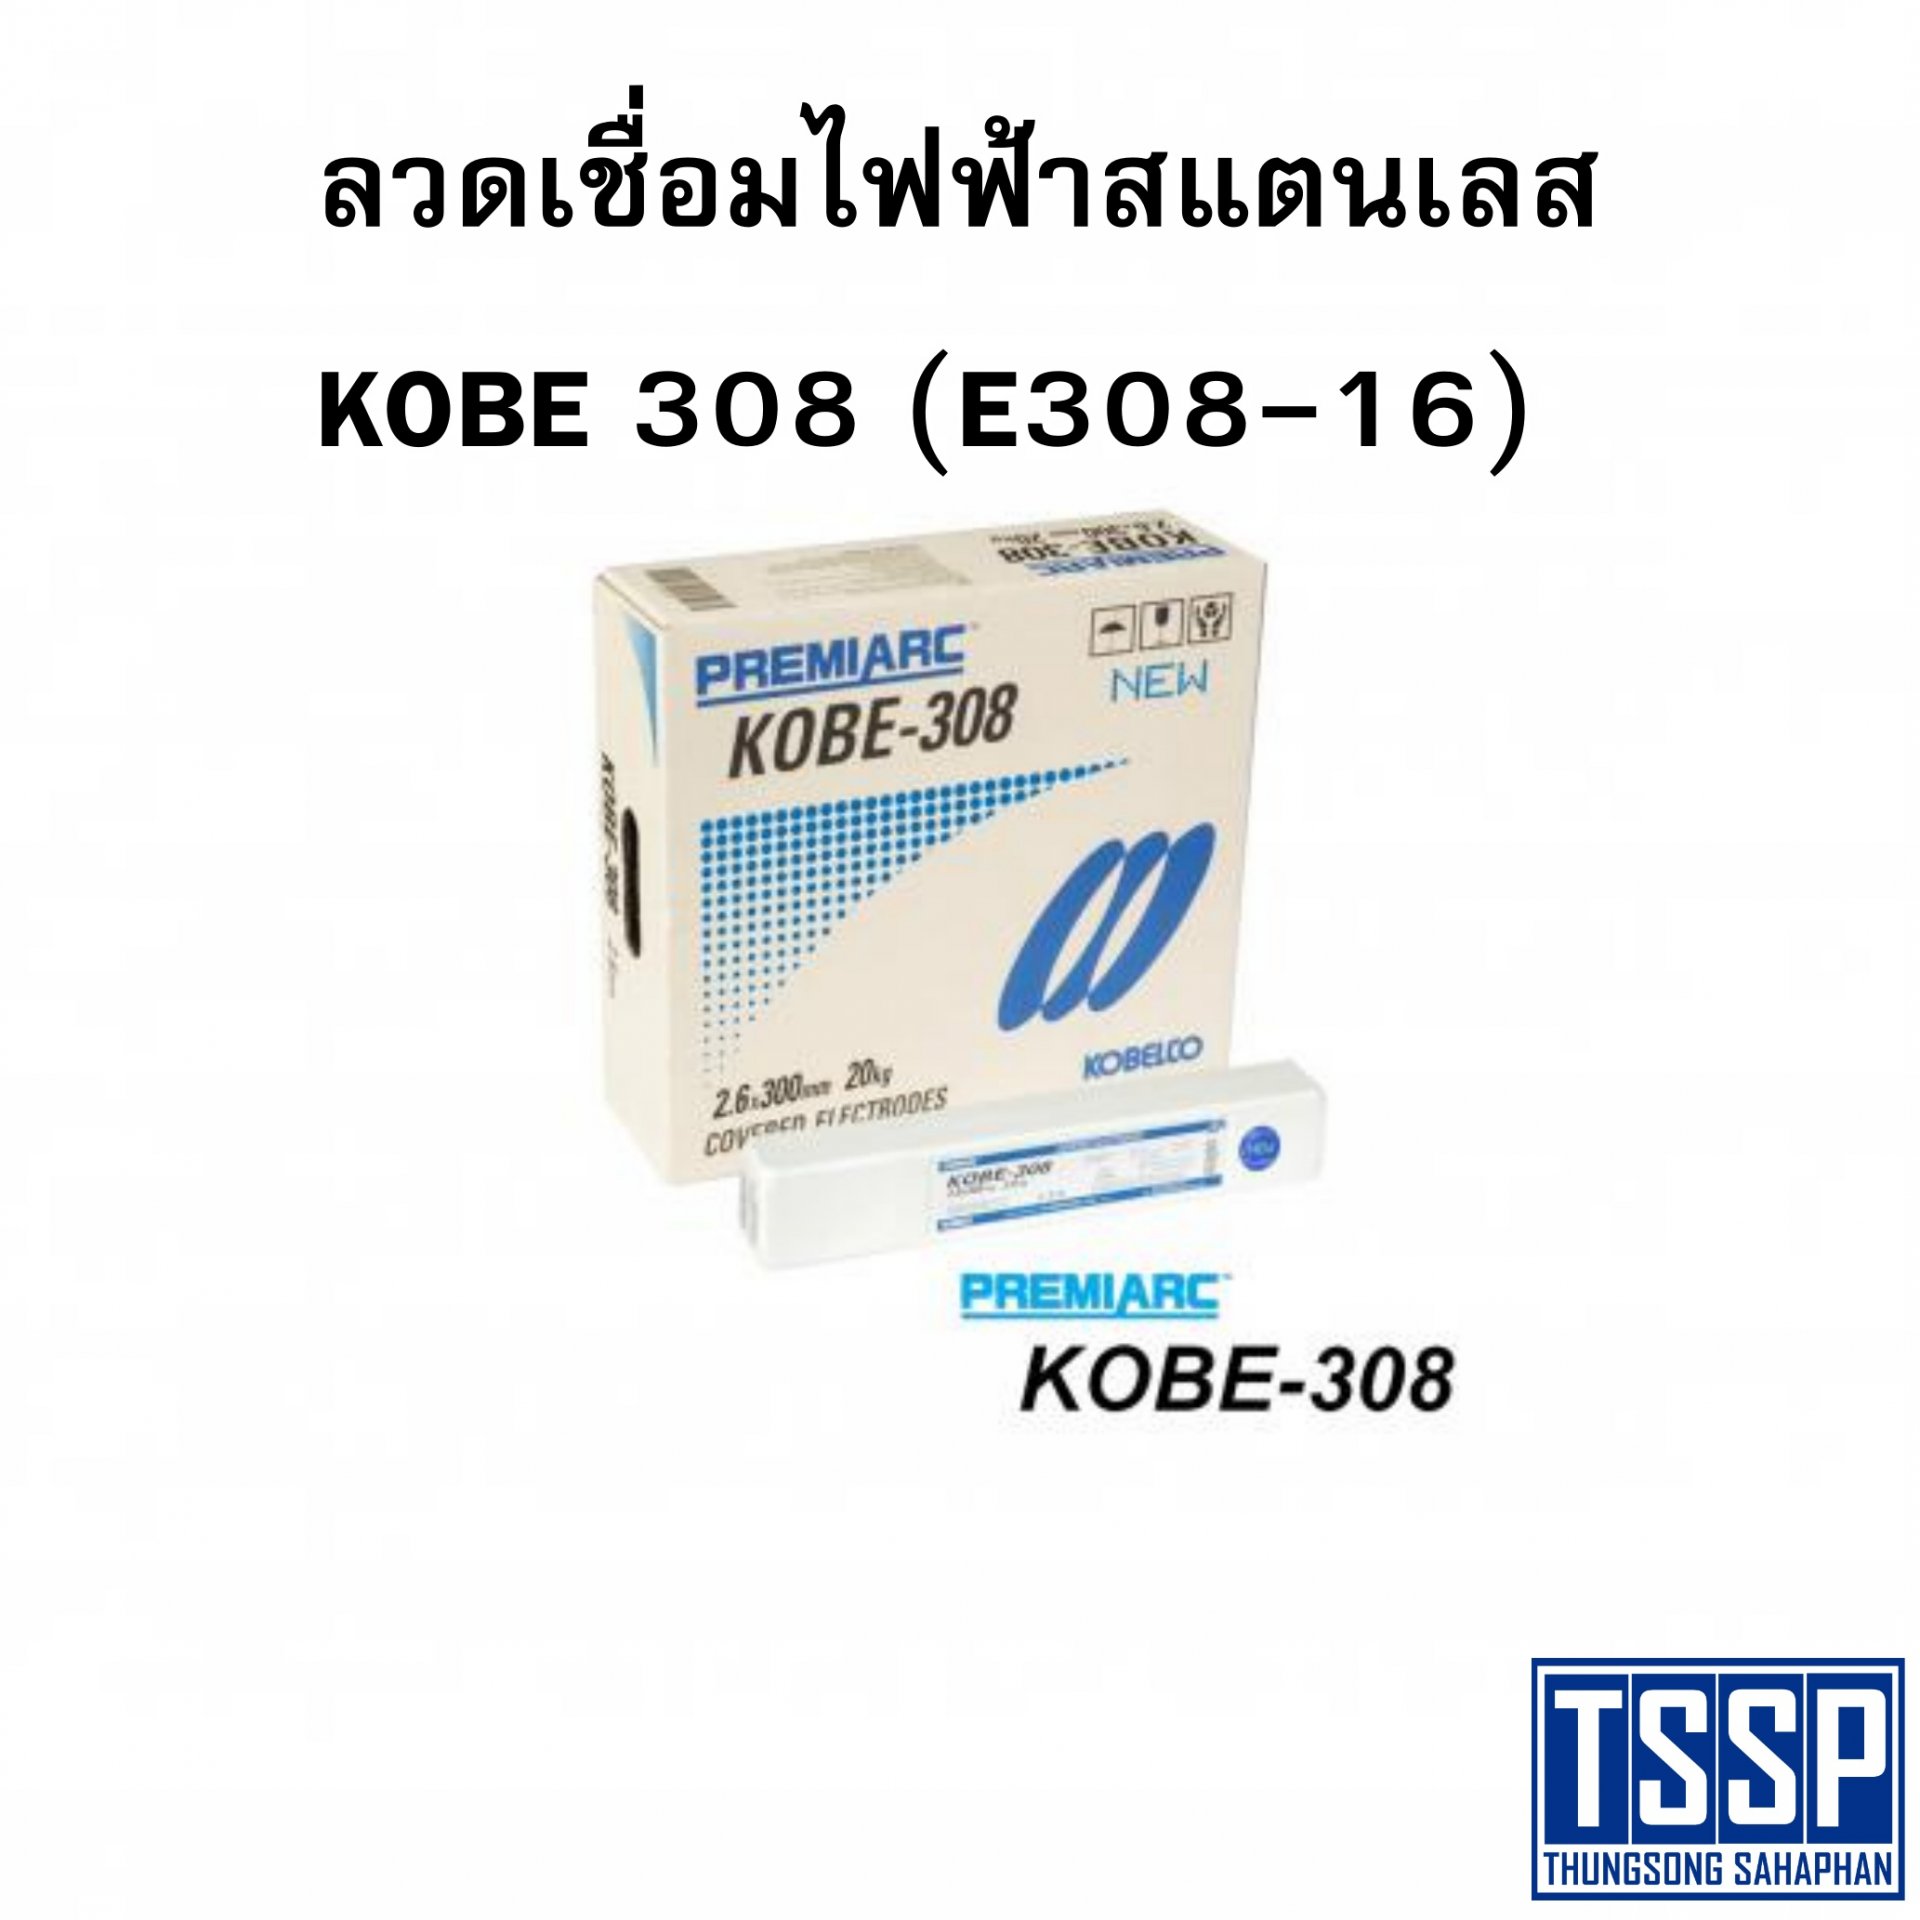 ลวดเชื่อมไฟฟ้าสแตนเลส KOBE 308 (E308-16)